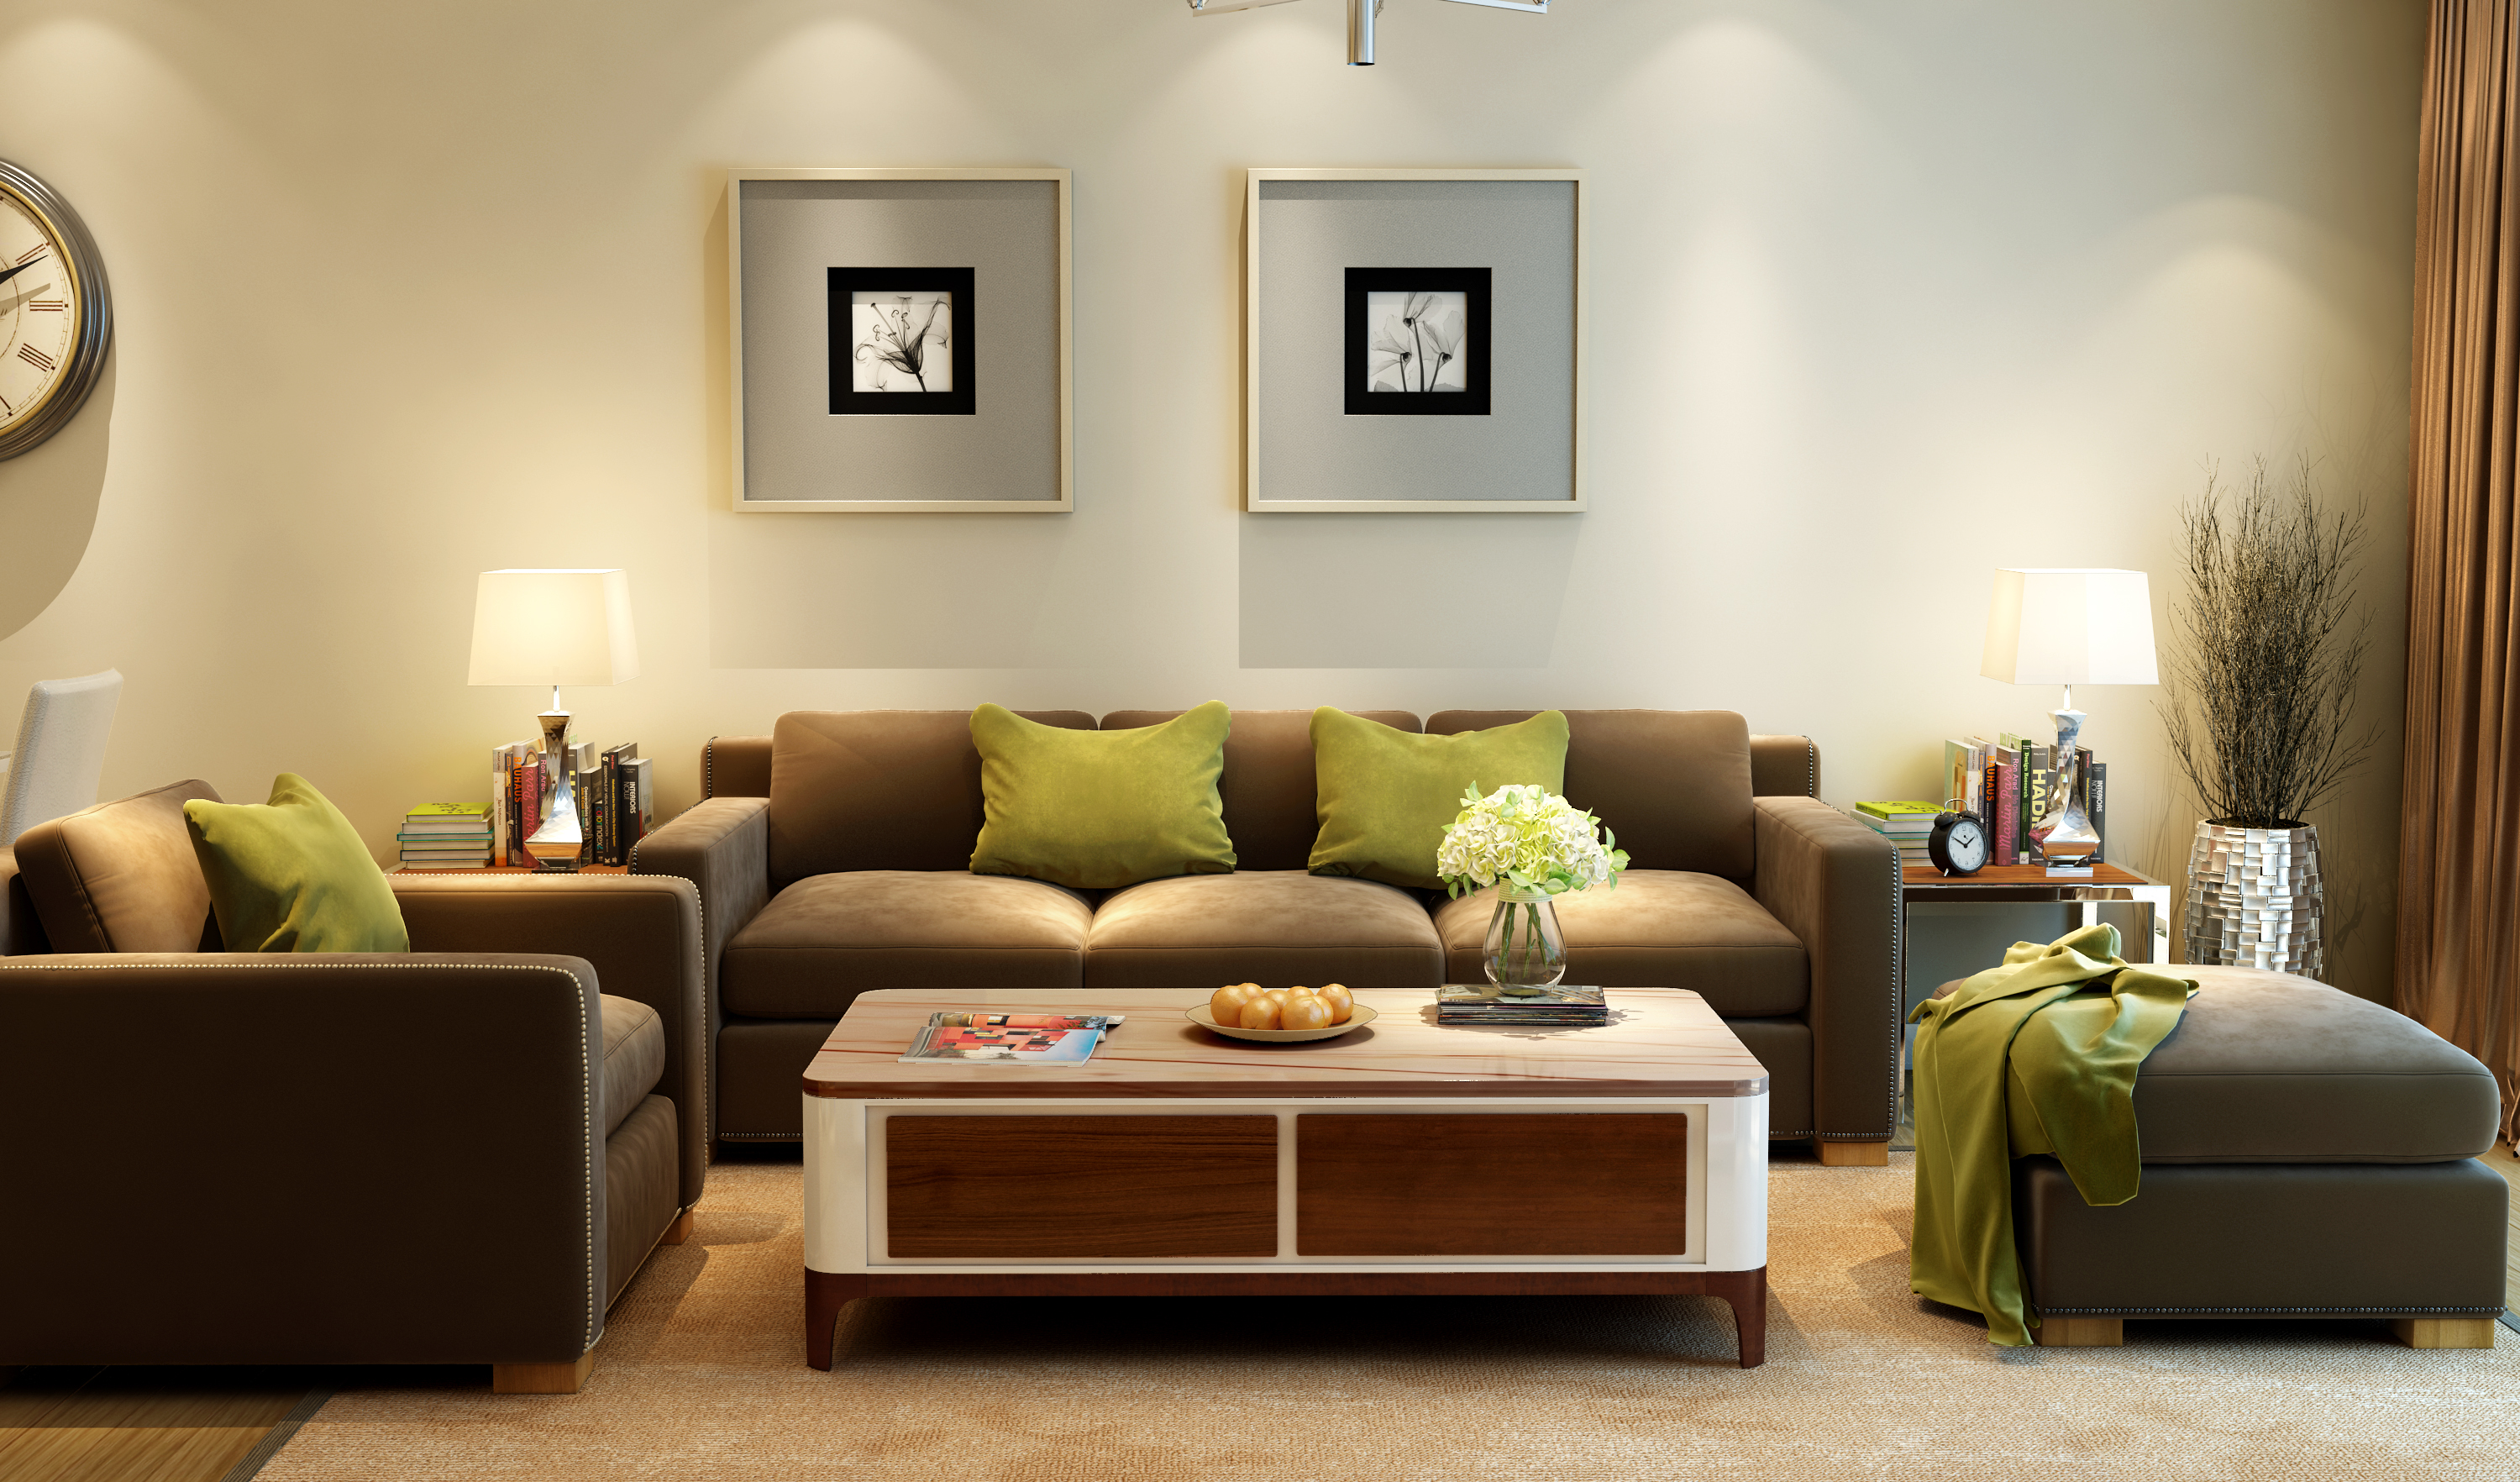 现代时尚简约家具客厅餐厅全套开发设计,3d效果图制作 furniture